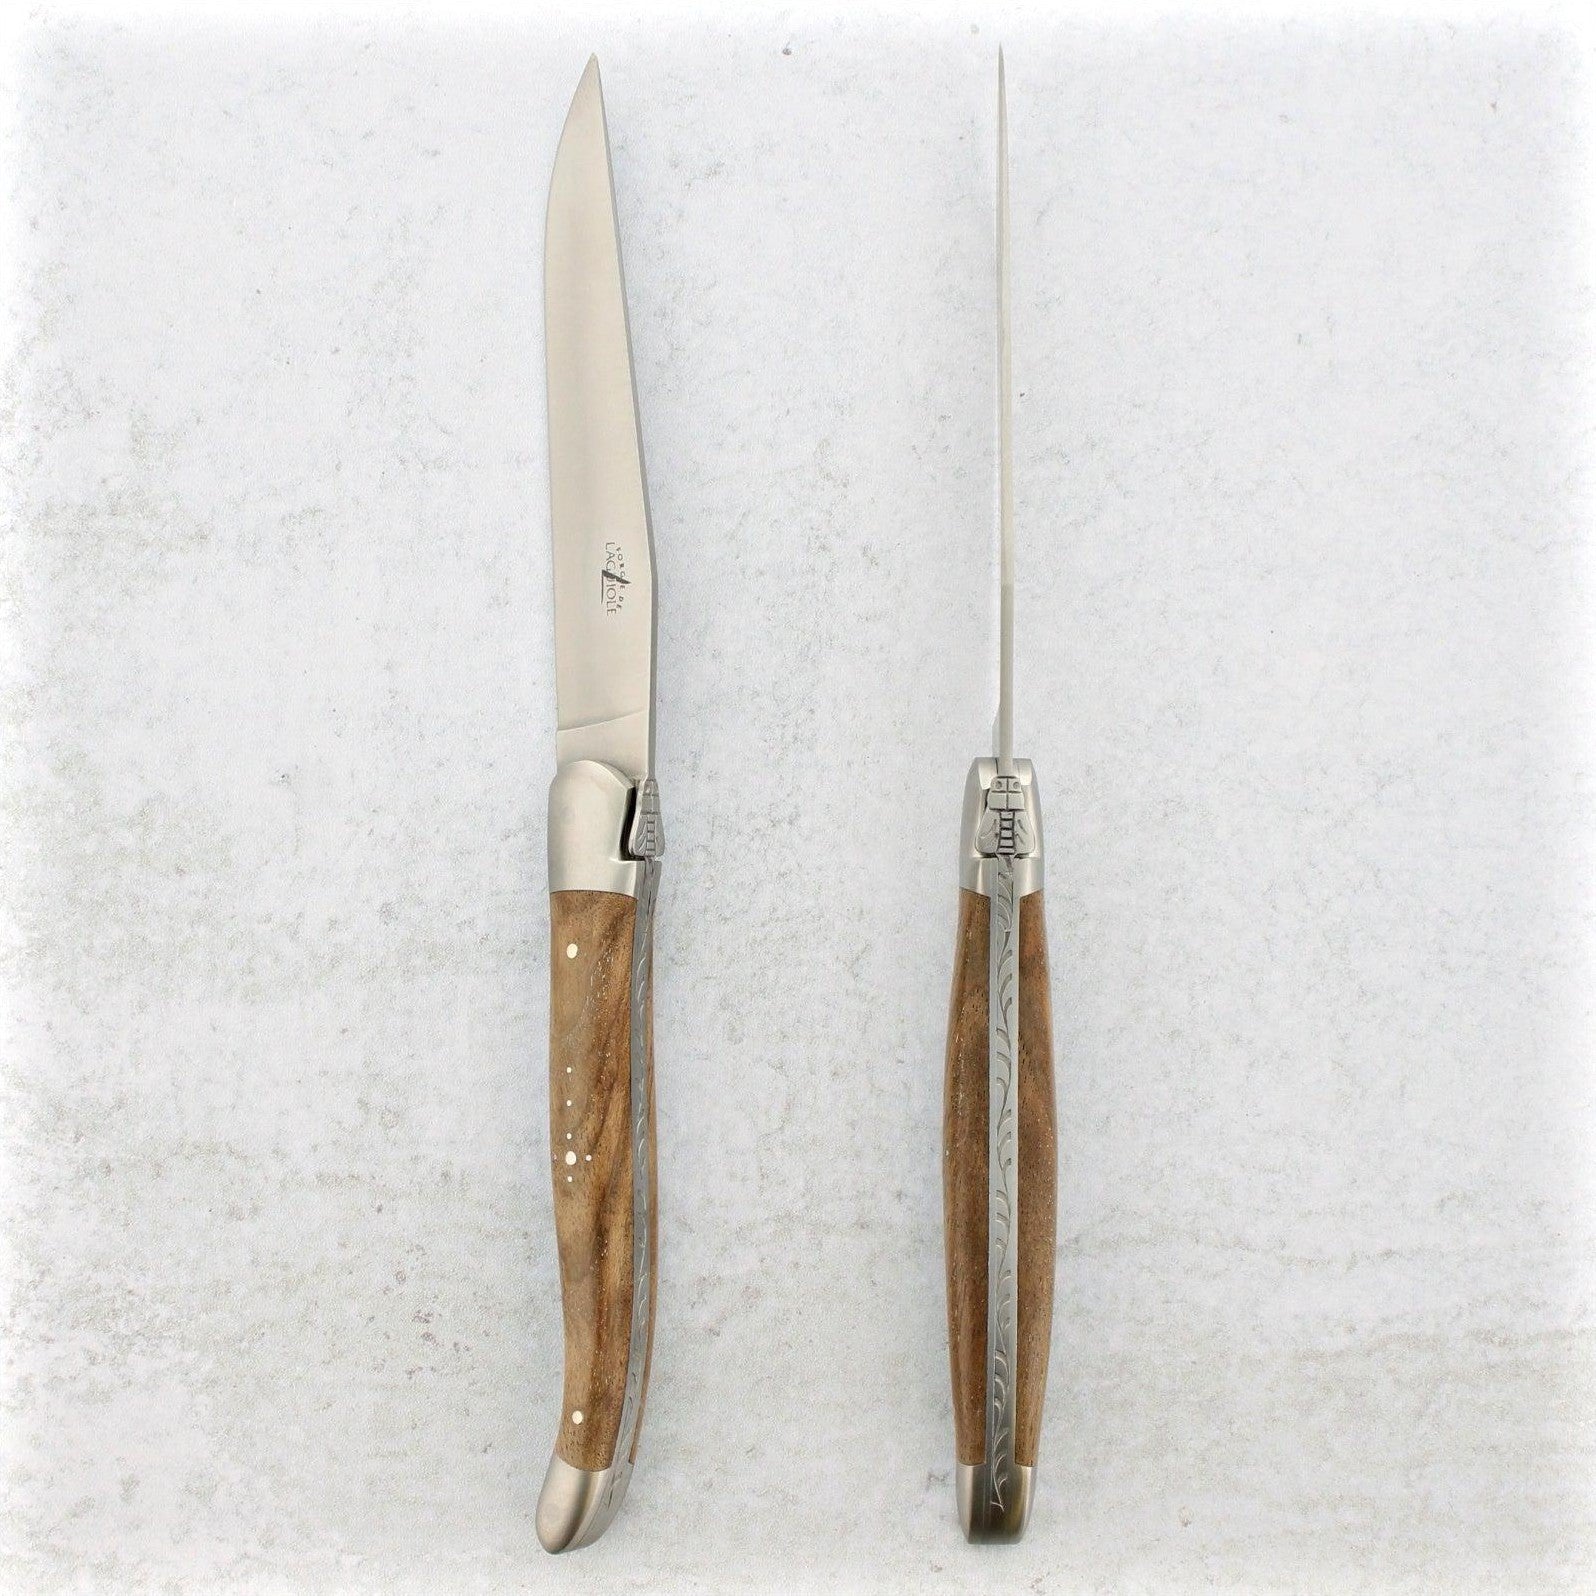 https://www.laguiole-imports.com/cdn/shop/products/Laguiole-Steak-Knives-Walnut-Handle-Satin-Finish-Forge-de-Laguiole-2.jpg?v=1674999005